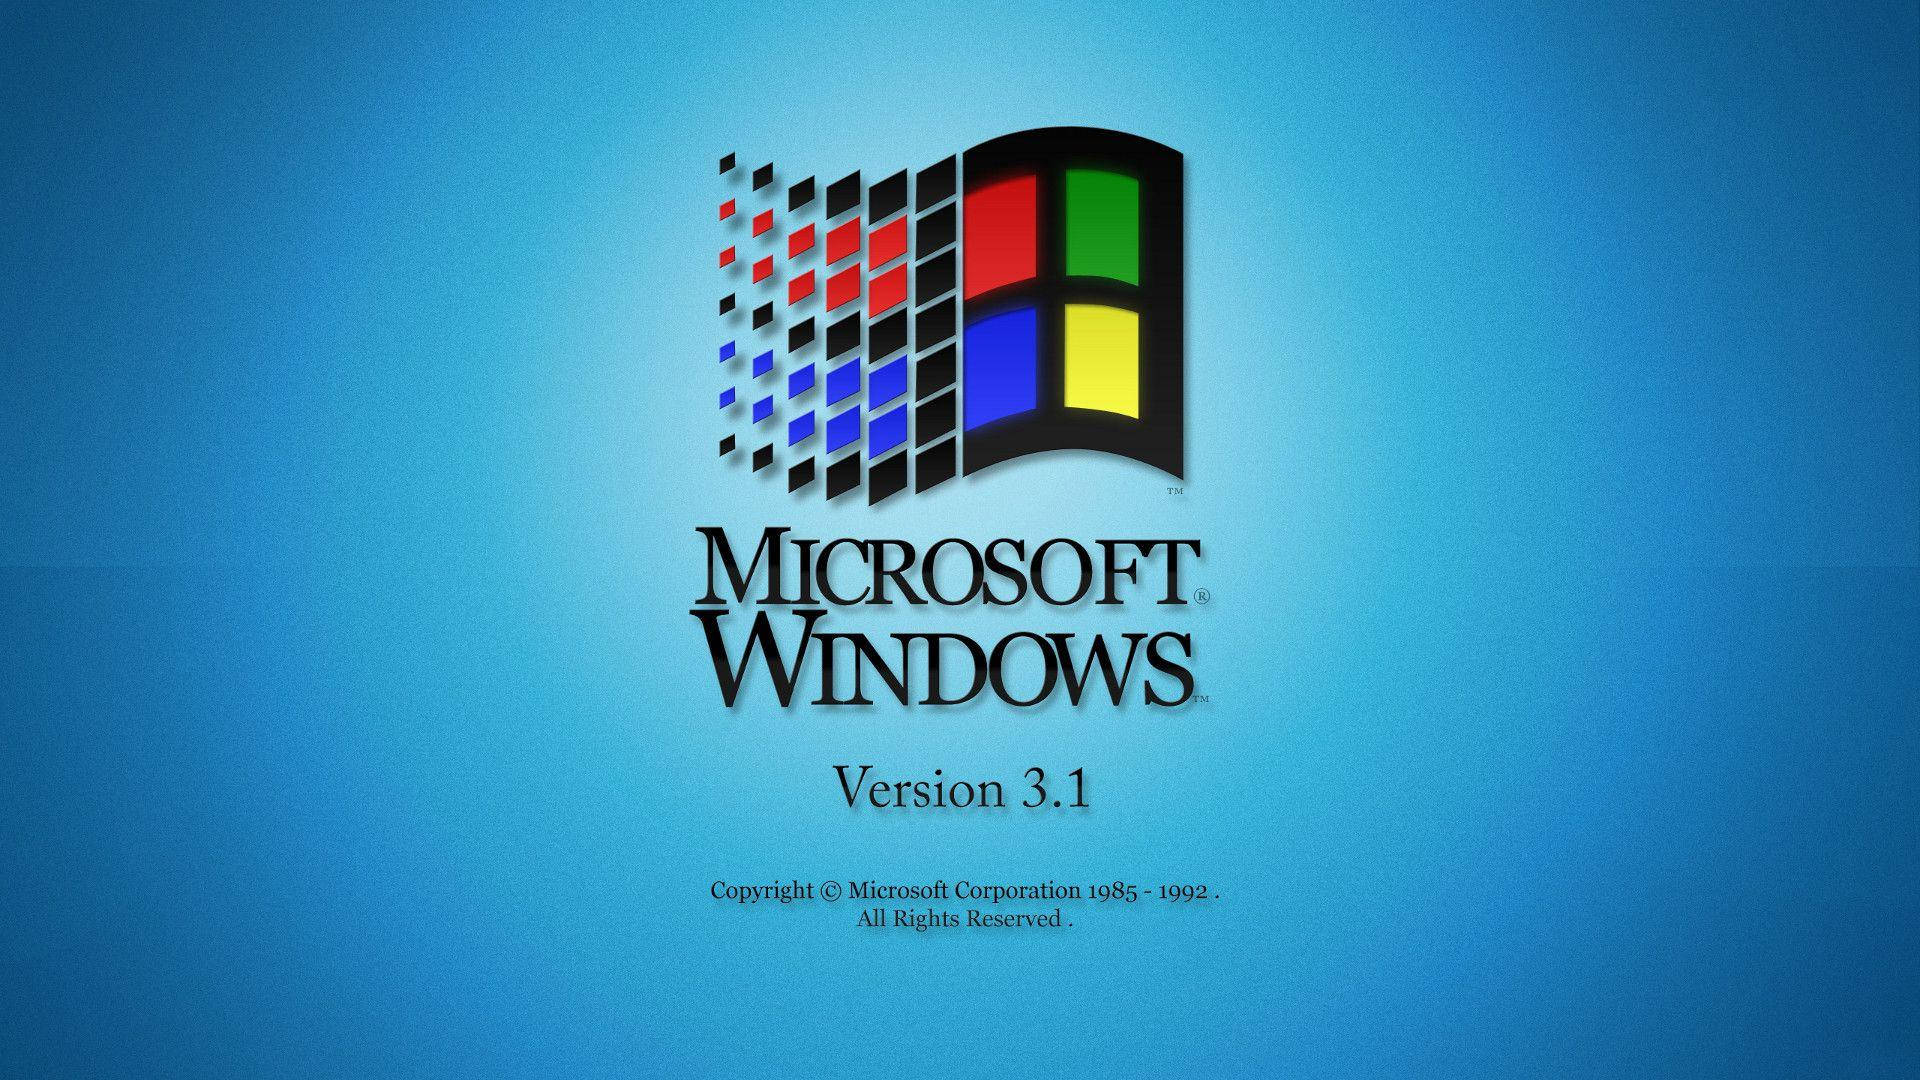 Denikoniska Windows 98 I All Dess Härlighet Wallpaper